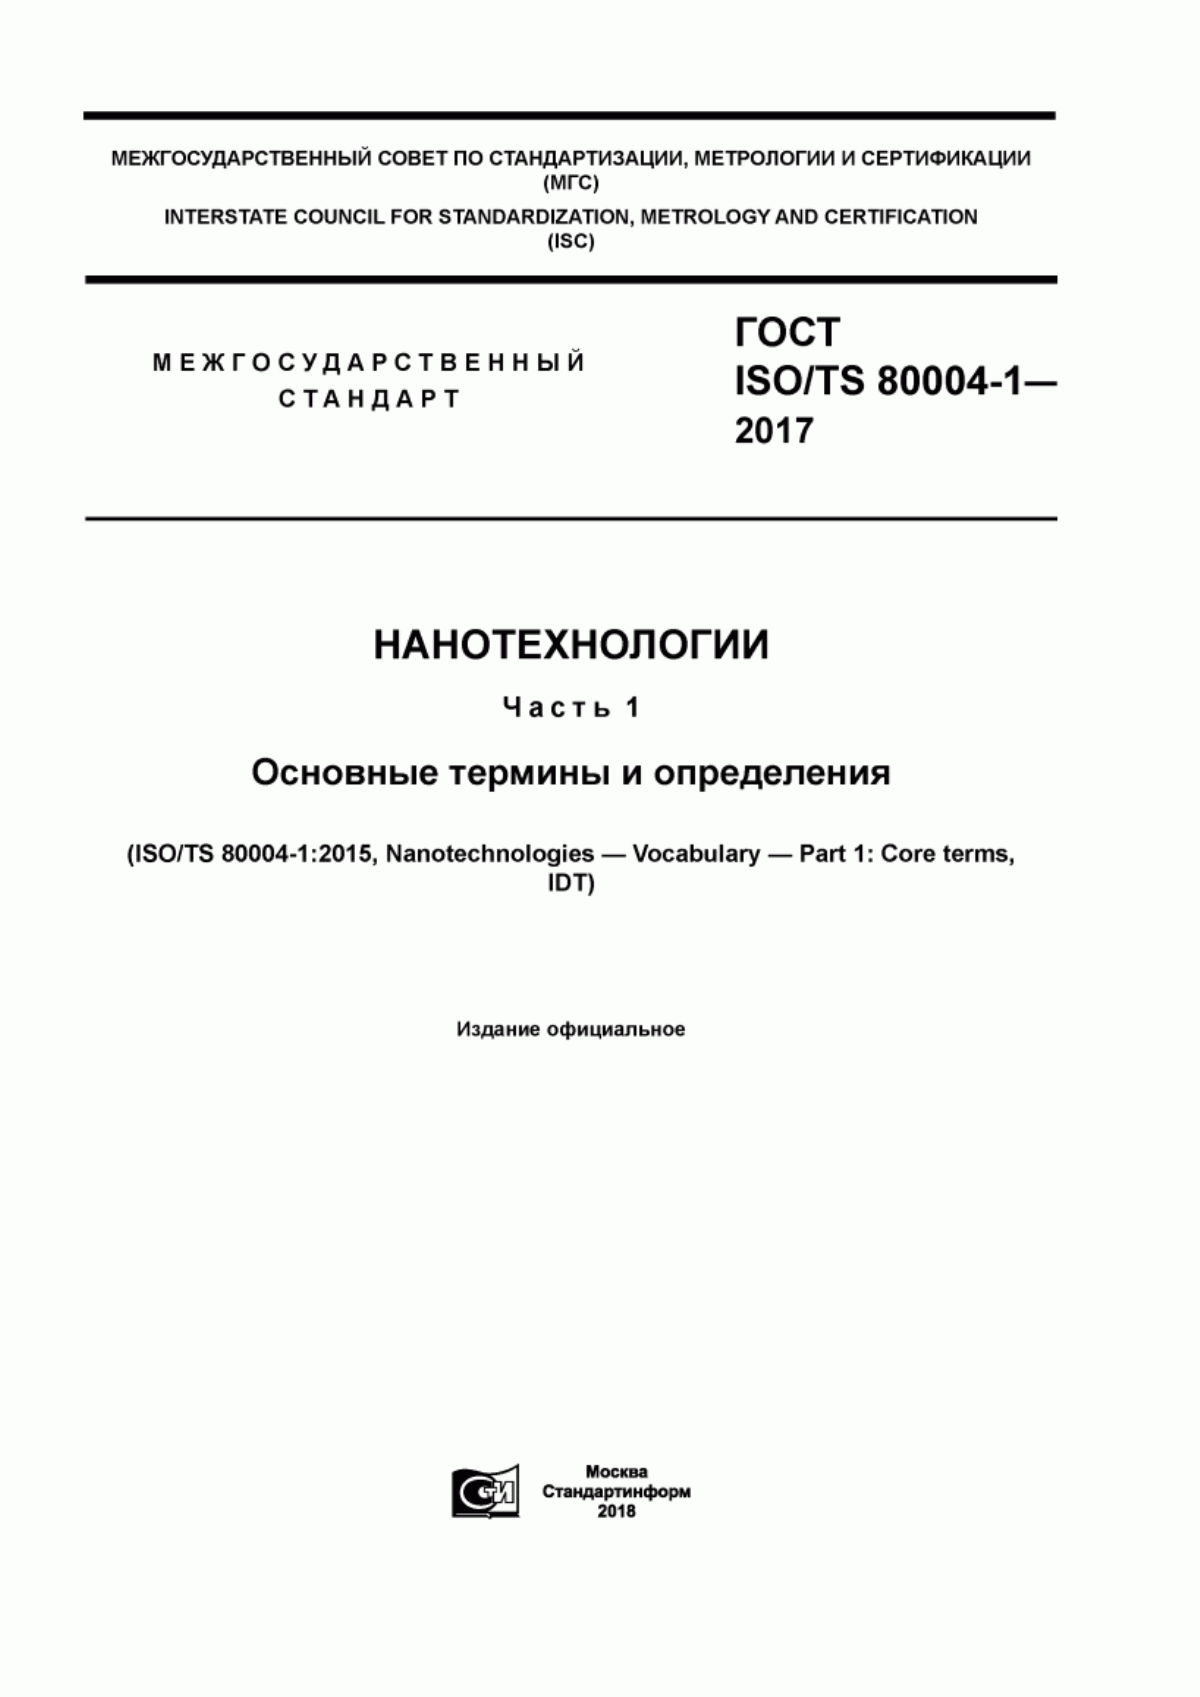 ГОСТ ISO/TS 80004-1-2017 Нанотехнологии. Часть 1. Основные термины и определения